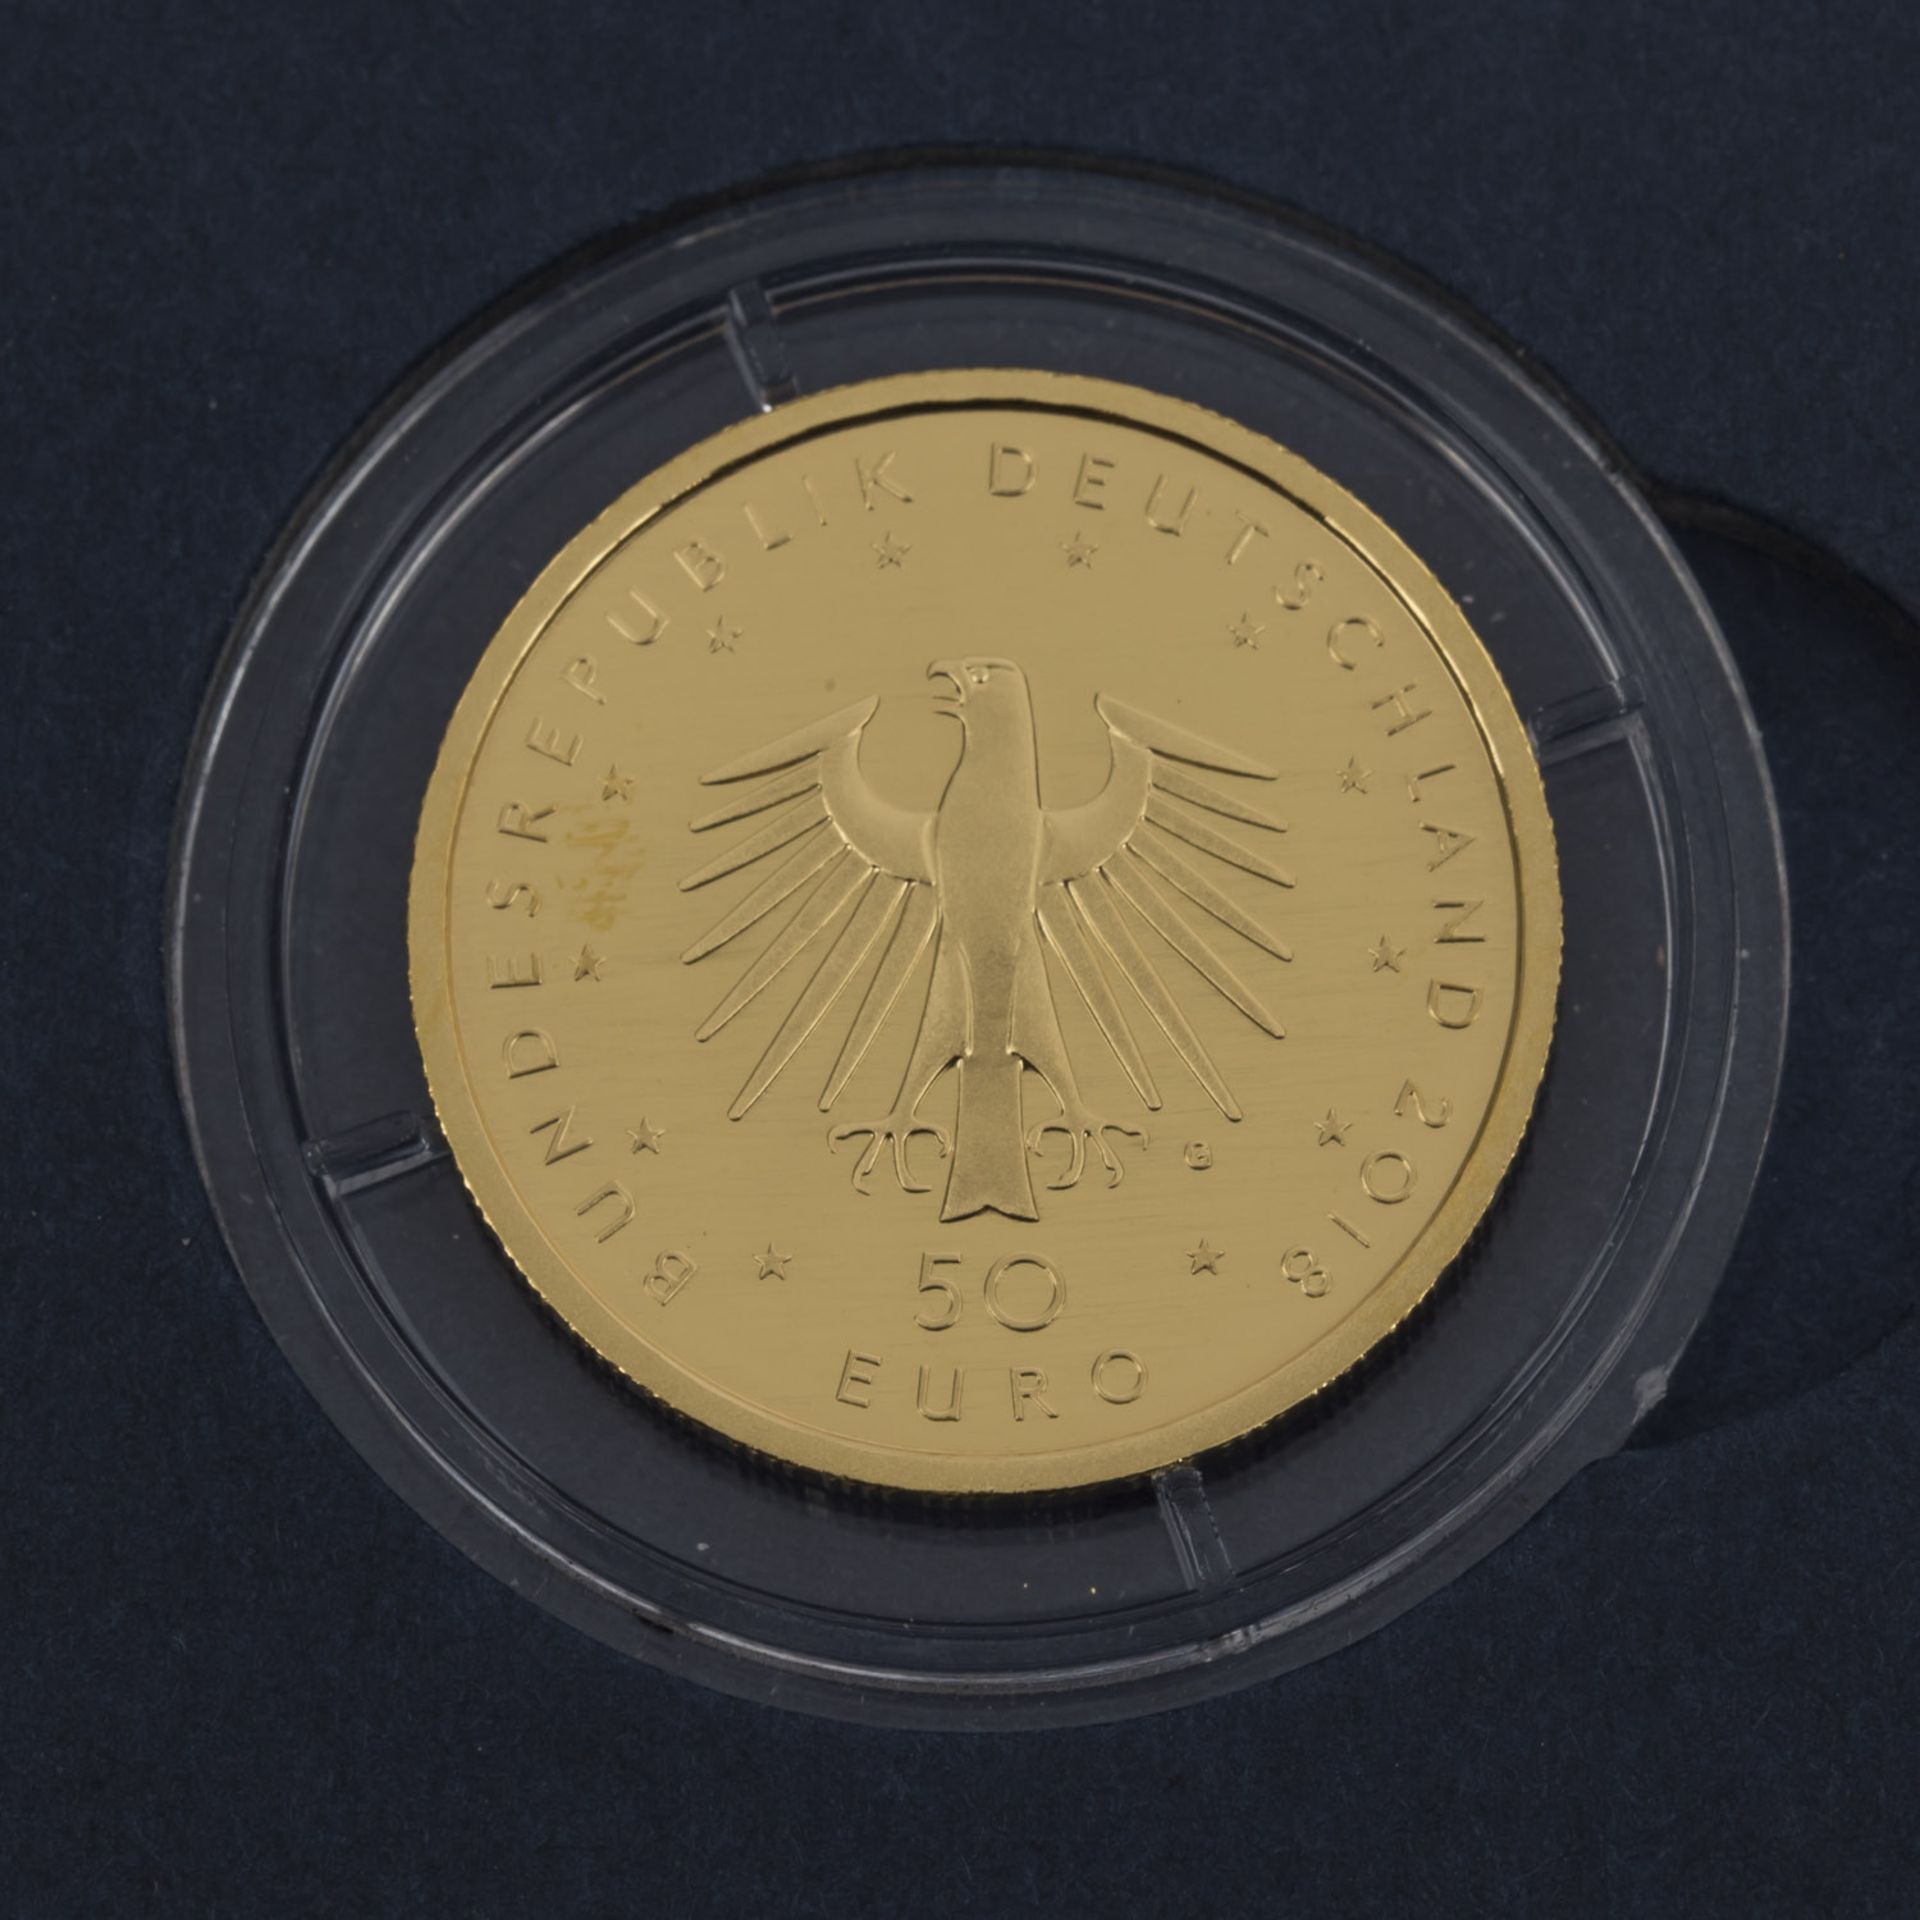 BRD/GOLD - 50 Euro 2018 Kontrabass,1/4 Unze fein, prägefrisch, Zertifikat + EtuiFRG/GOLD - 50 Euro - Bild 3 aus 3